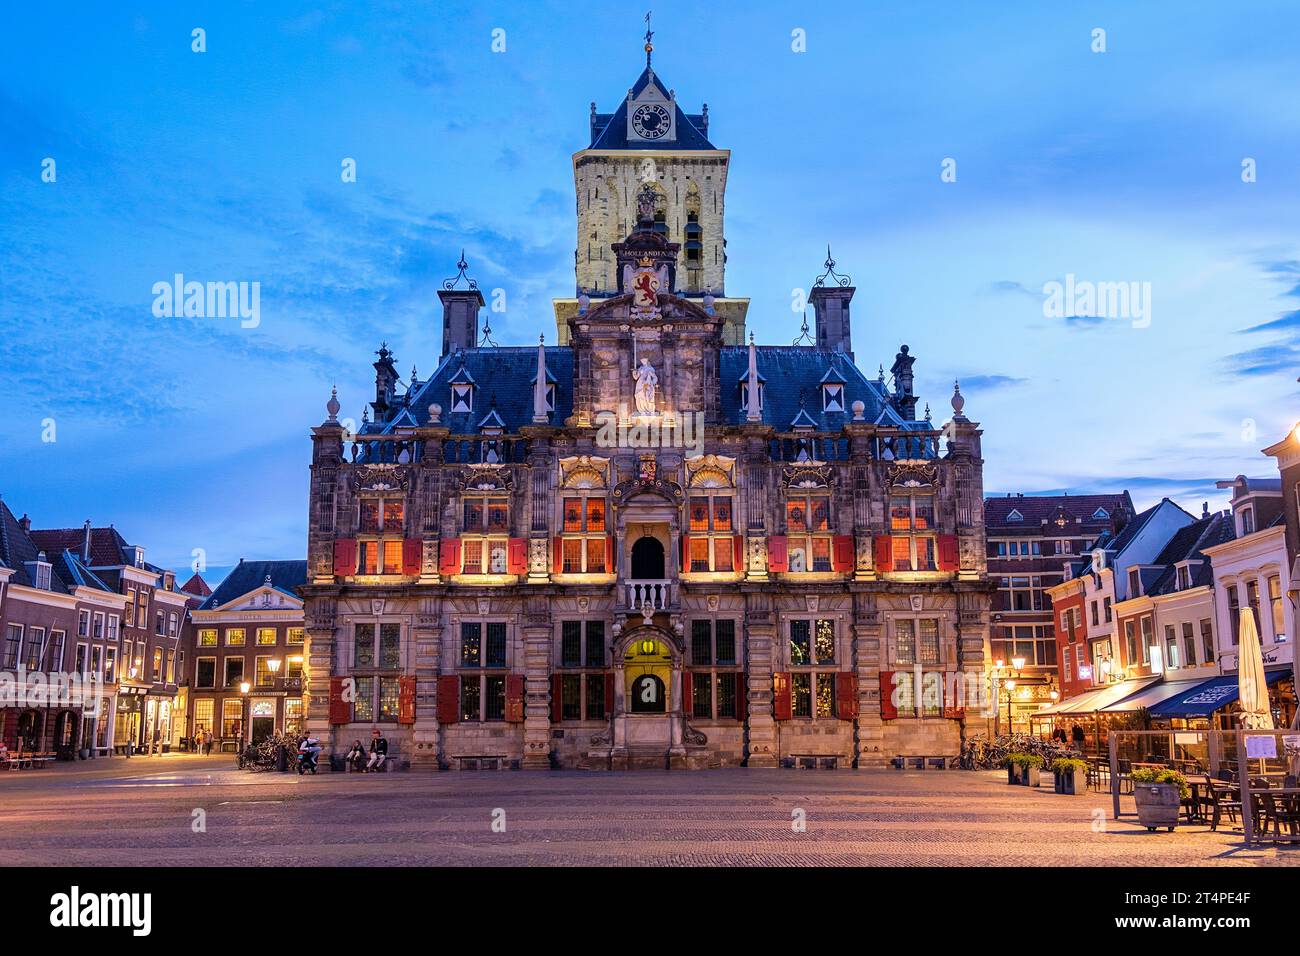 Municipio di Delft, Paesi Bassi. L'edificio è un punto di riferimento storico e un esempio di architettura gotica e rinascimentale olandese. Foto Stock